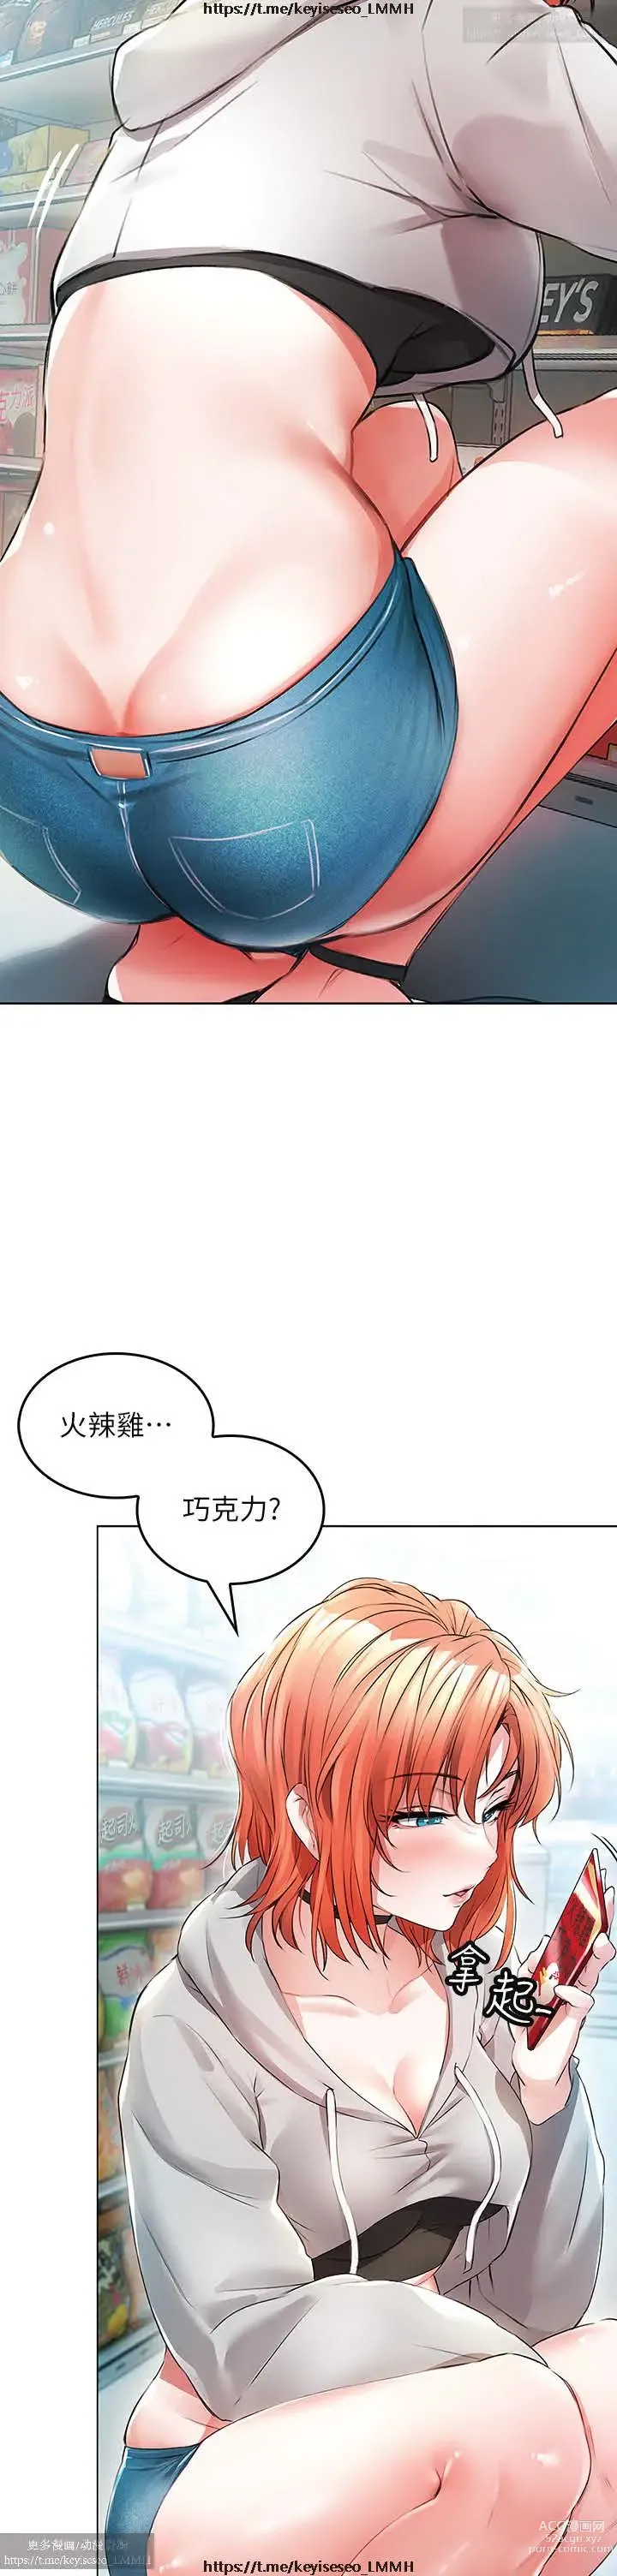 Page 7 of manga 小心你后面 1-24 完结